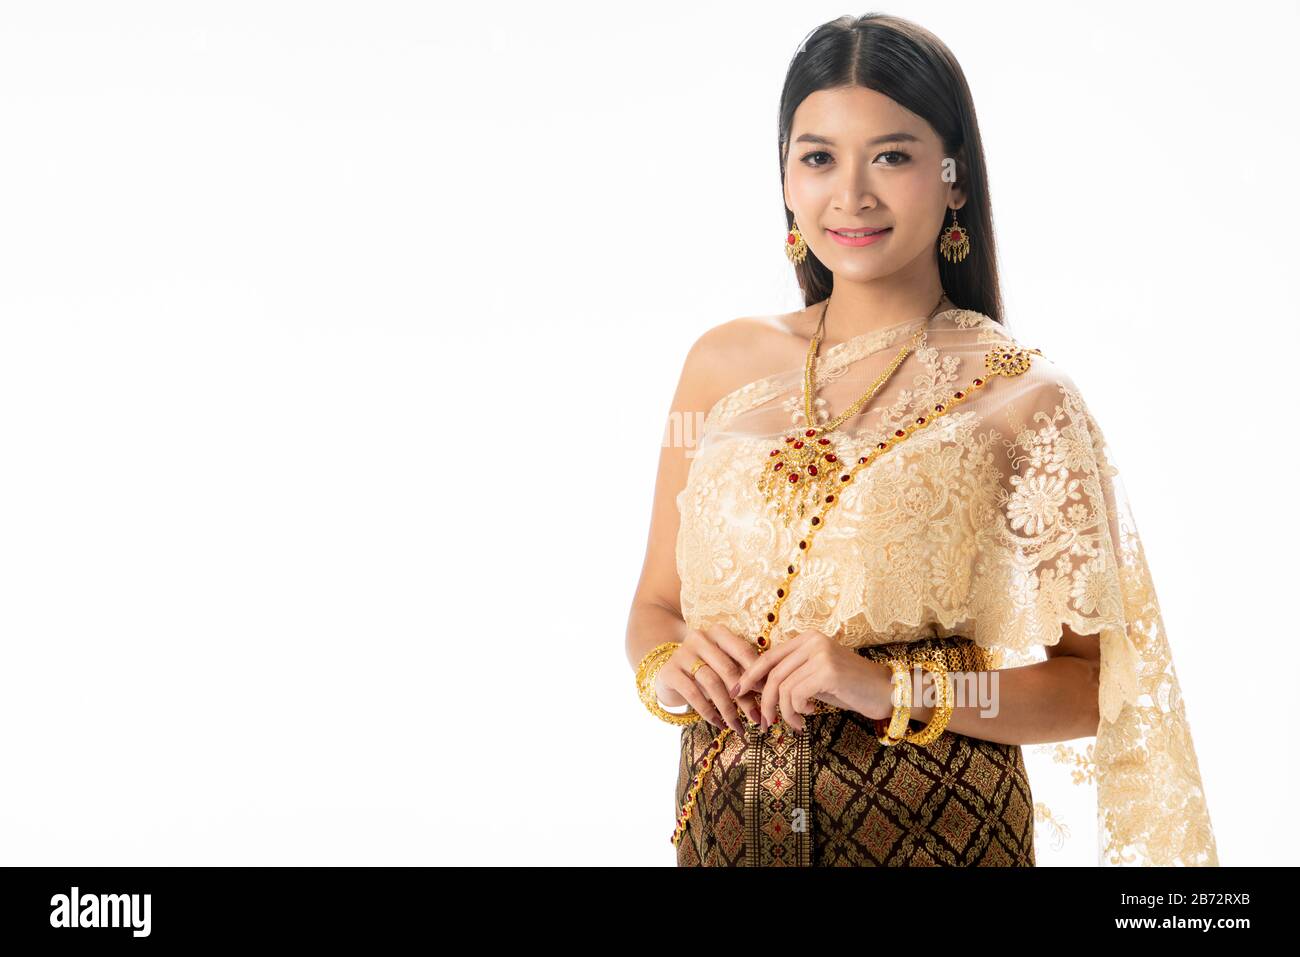 Belle femme thaïlandaise portrait s'habiller en costume thaïlandais traditionnel sur fond blanc. Concept culturel thaïlandais. Banque D'Images